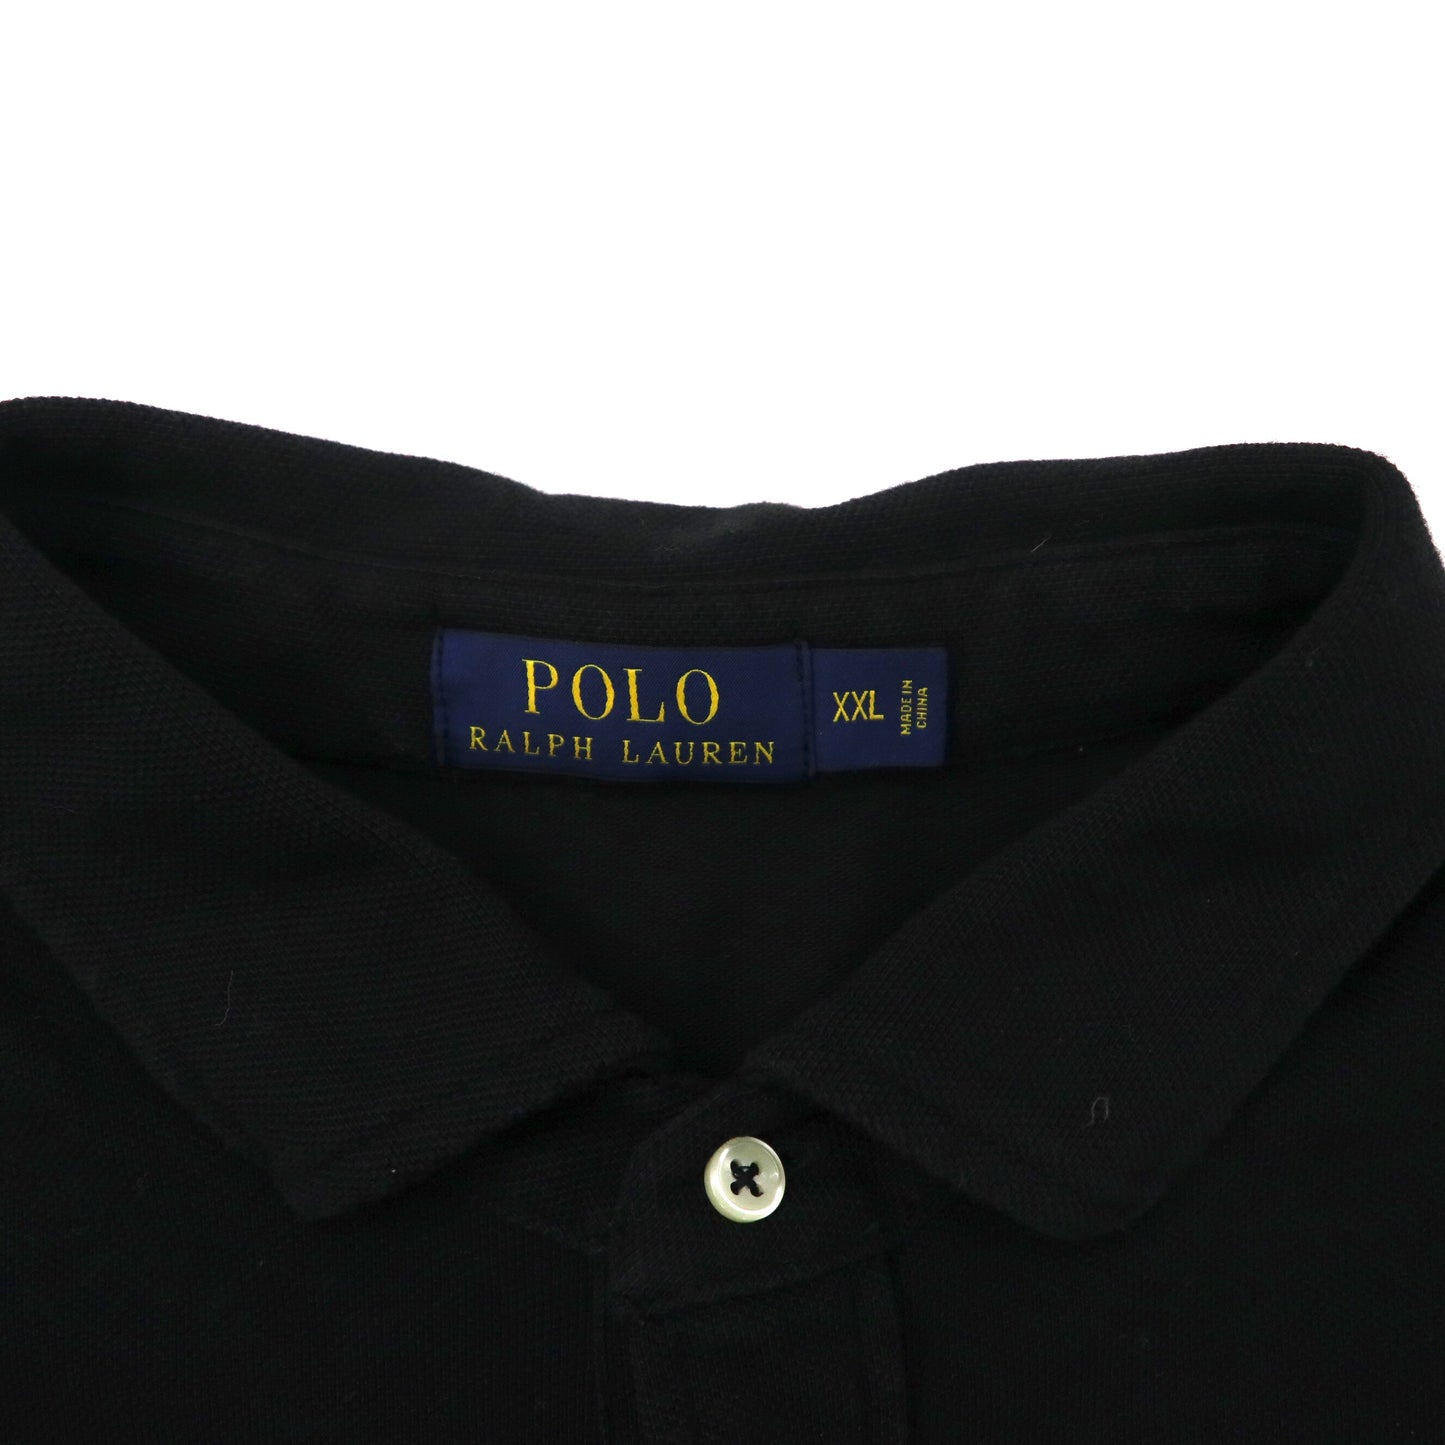 POLO RALPH LAUREN ビッグサイズ 長袖ポロシャツ XXL ブラック コットン 鹿の子 スモールポニー刺繍